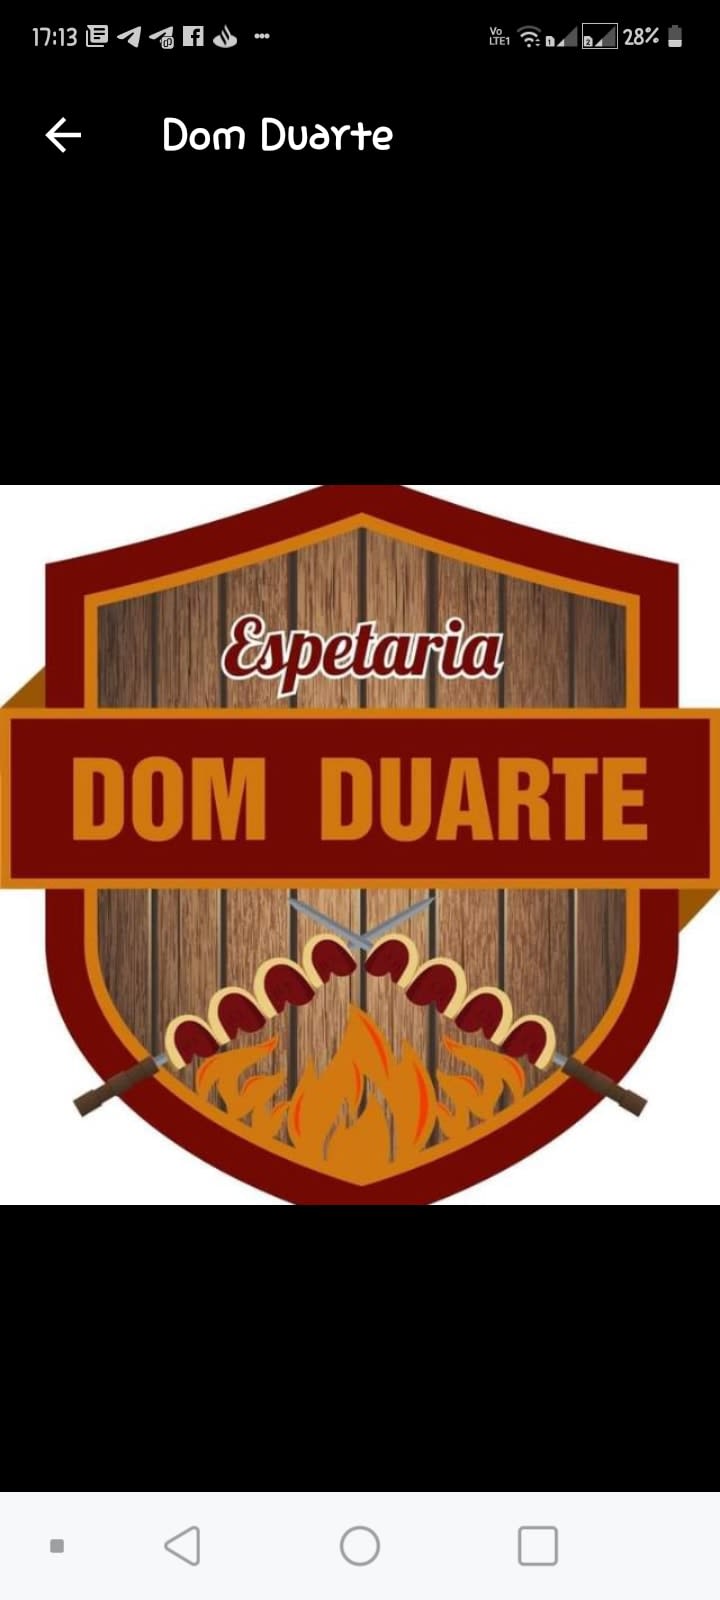 Espetaria Dom Duarte